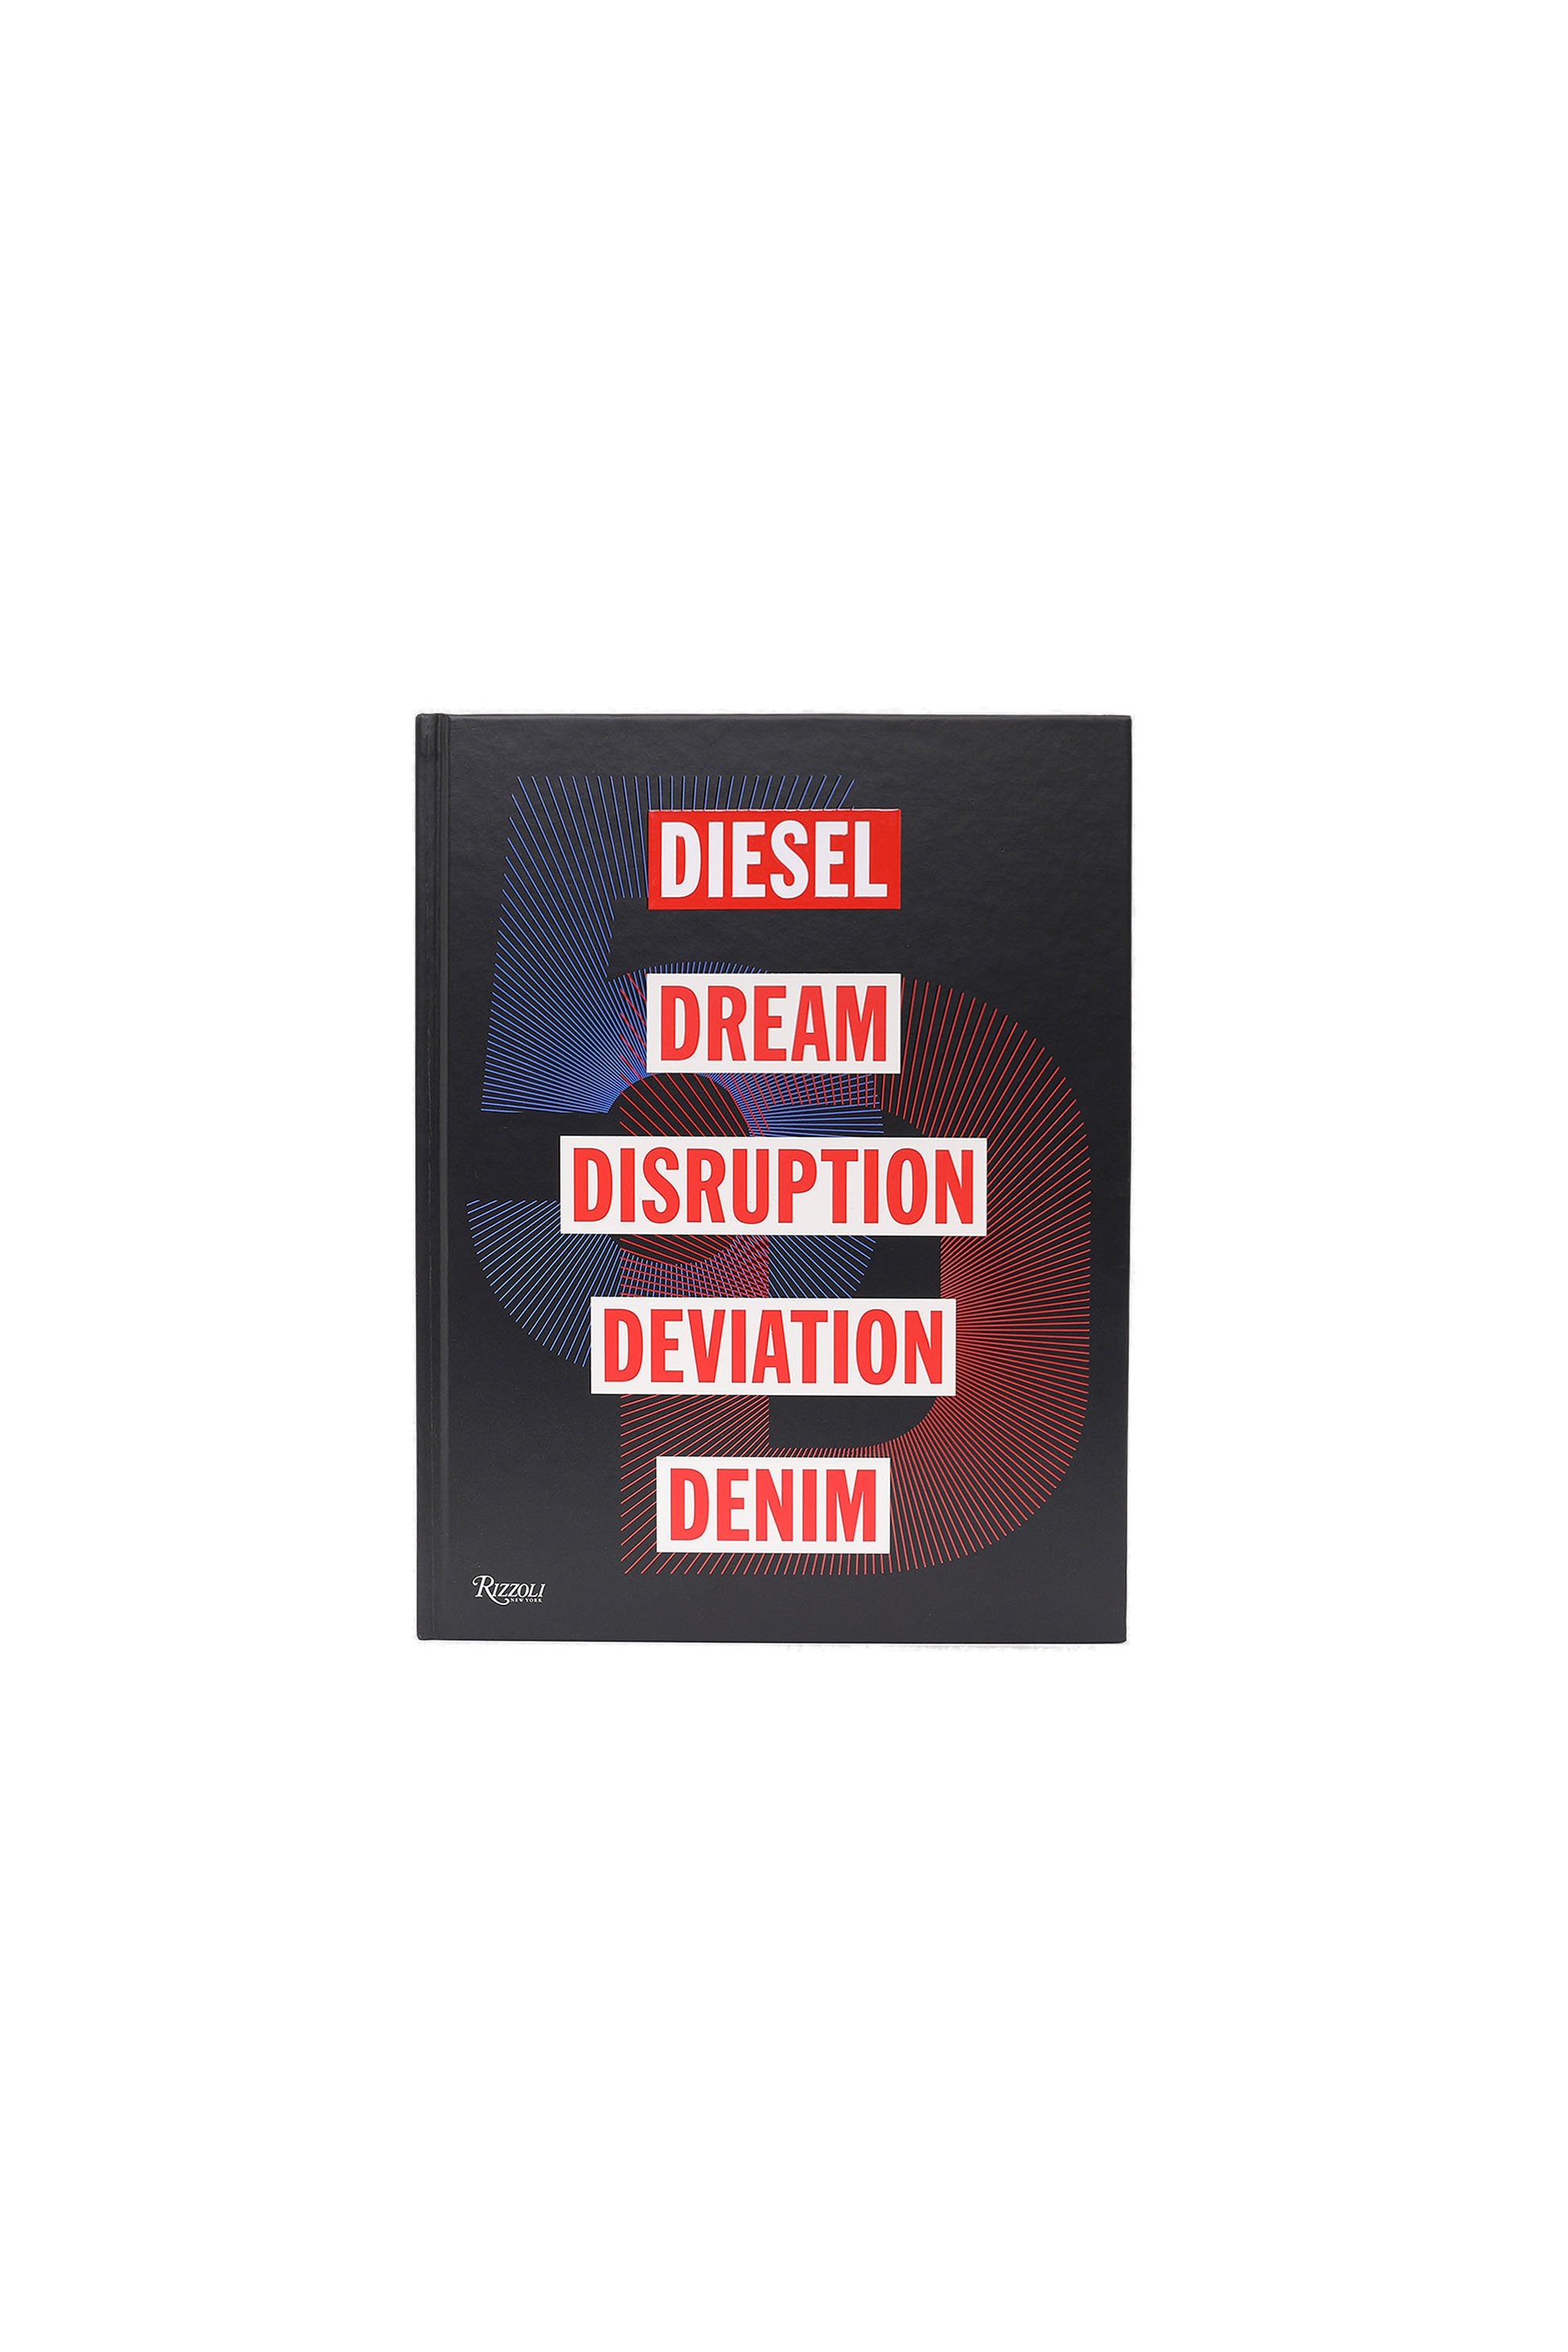 5D Diesel Dream Disruption Deviation Denim, Nero - Libri